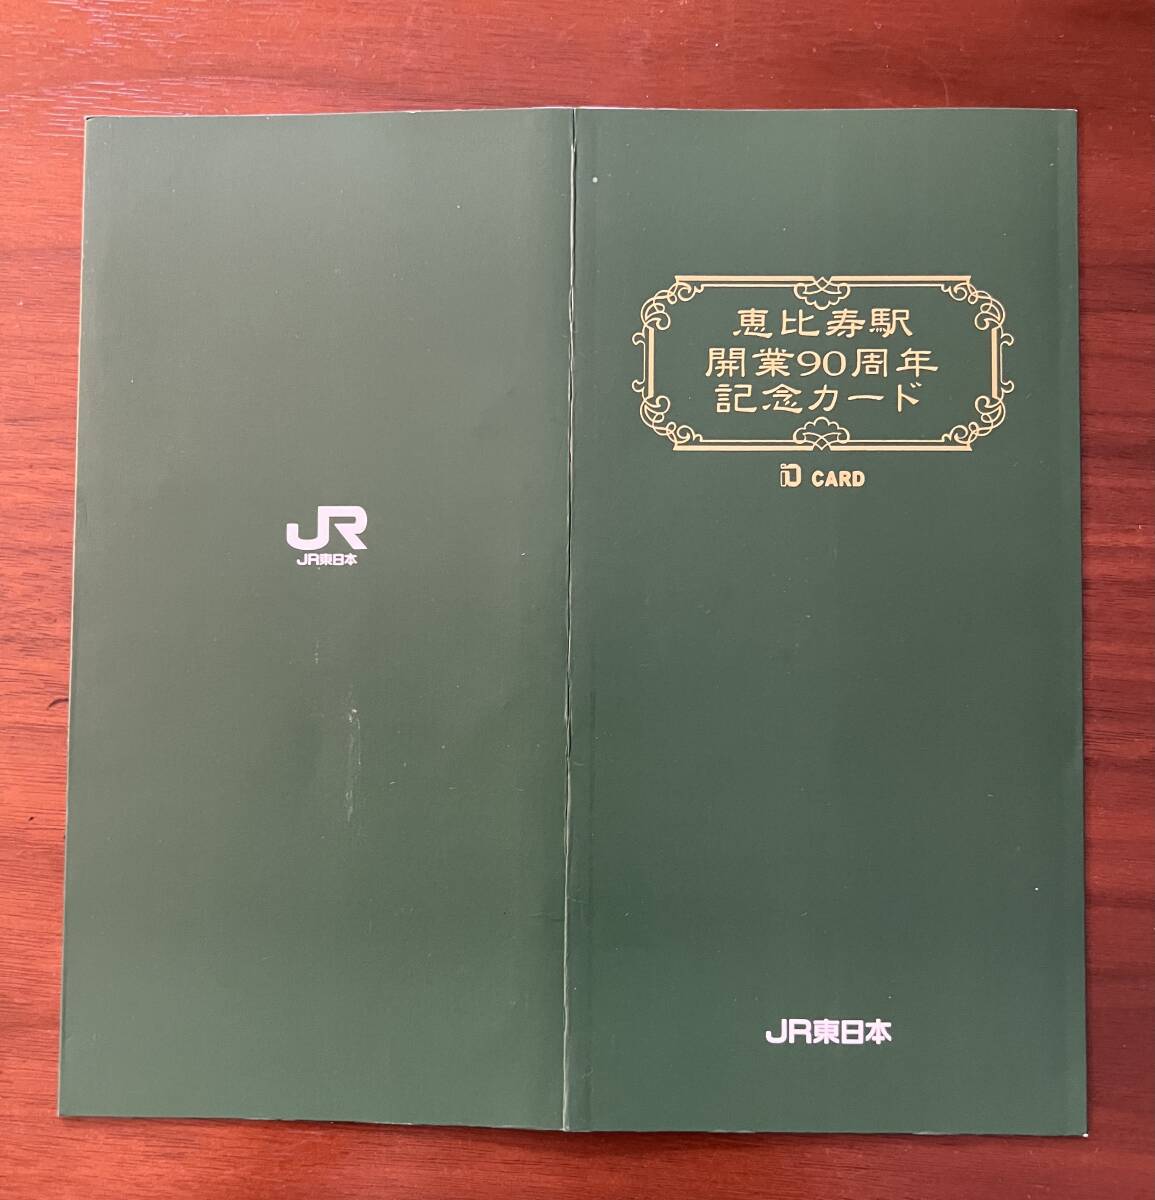 【送料無料】恵比寿駅 開業90周年 記念カード イオカード_画像2